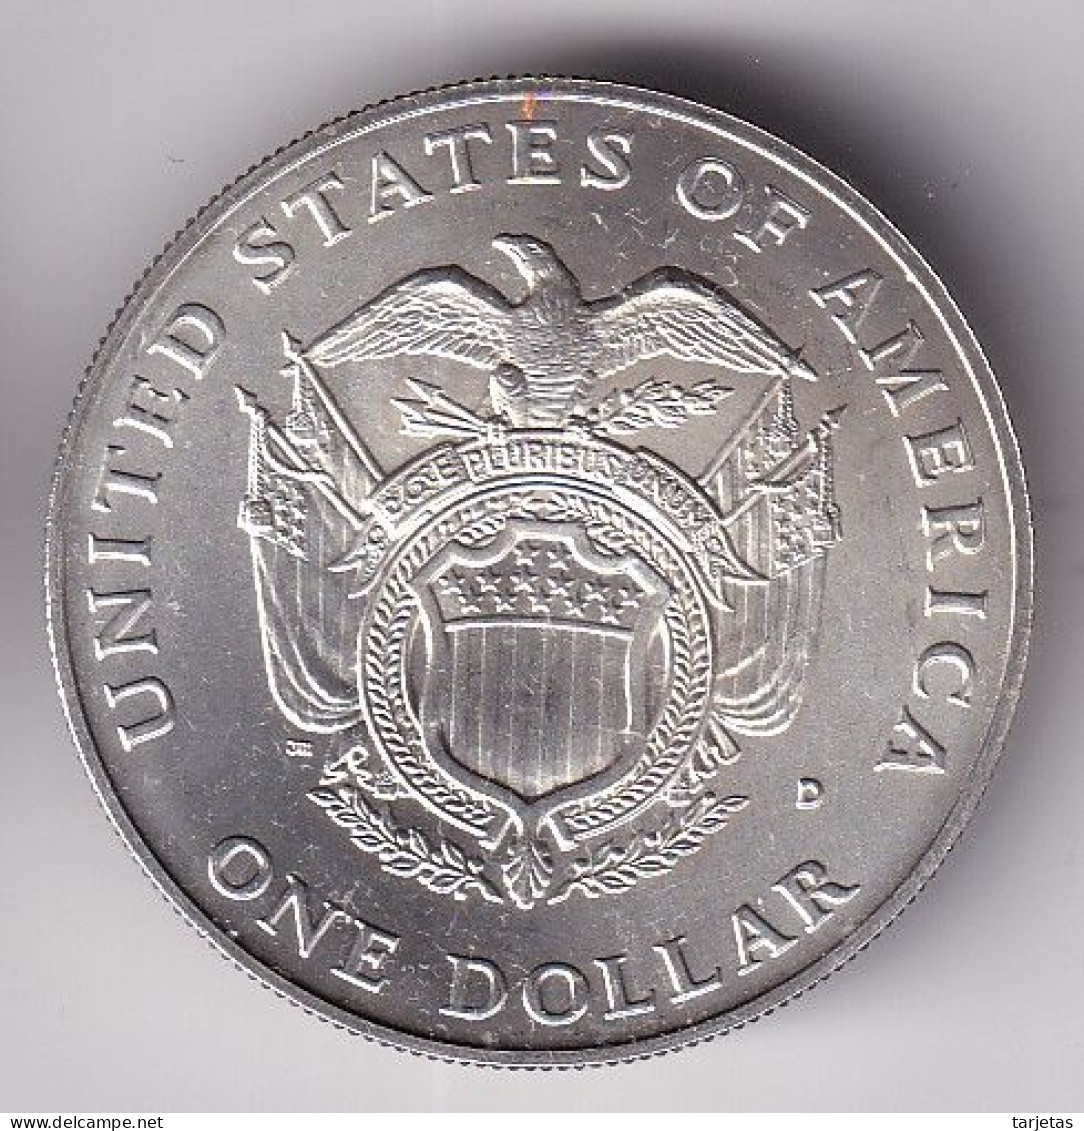 MONEDA DE PLATA DE ESTADOS UNIDOS DE 1 DOLLAR DEL AÑO 1987 (SILVER-ARGENT) - Conmemorativas